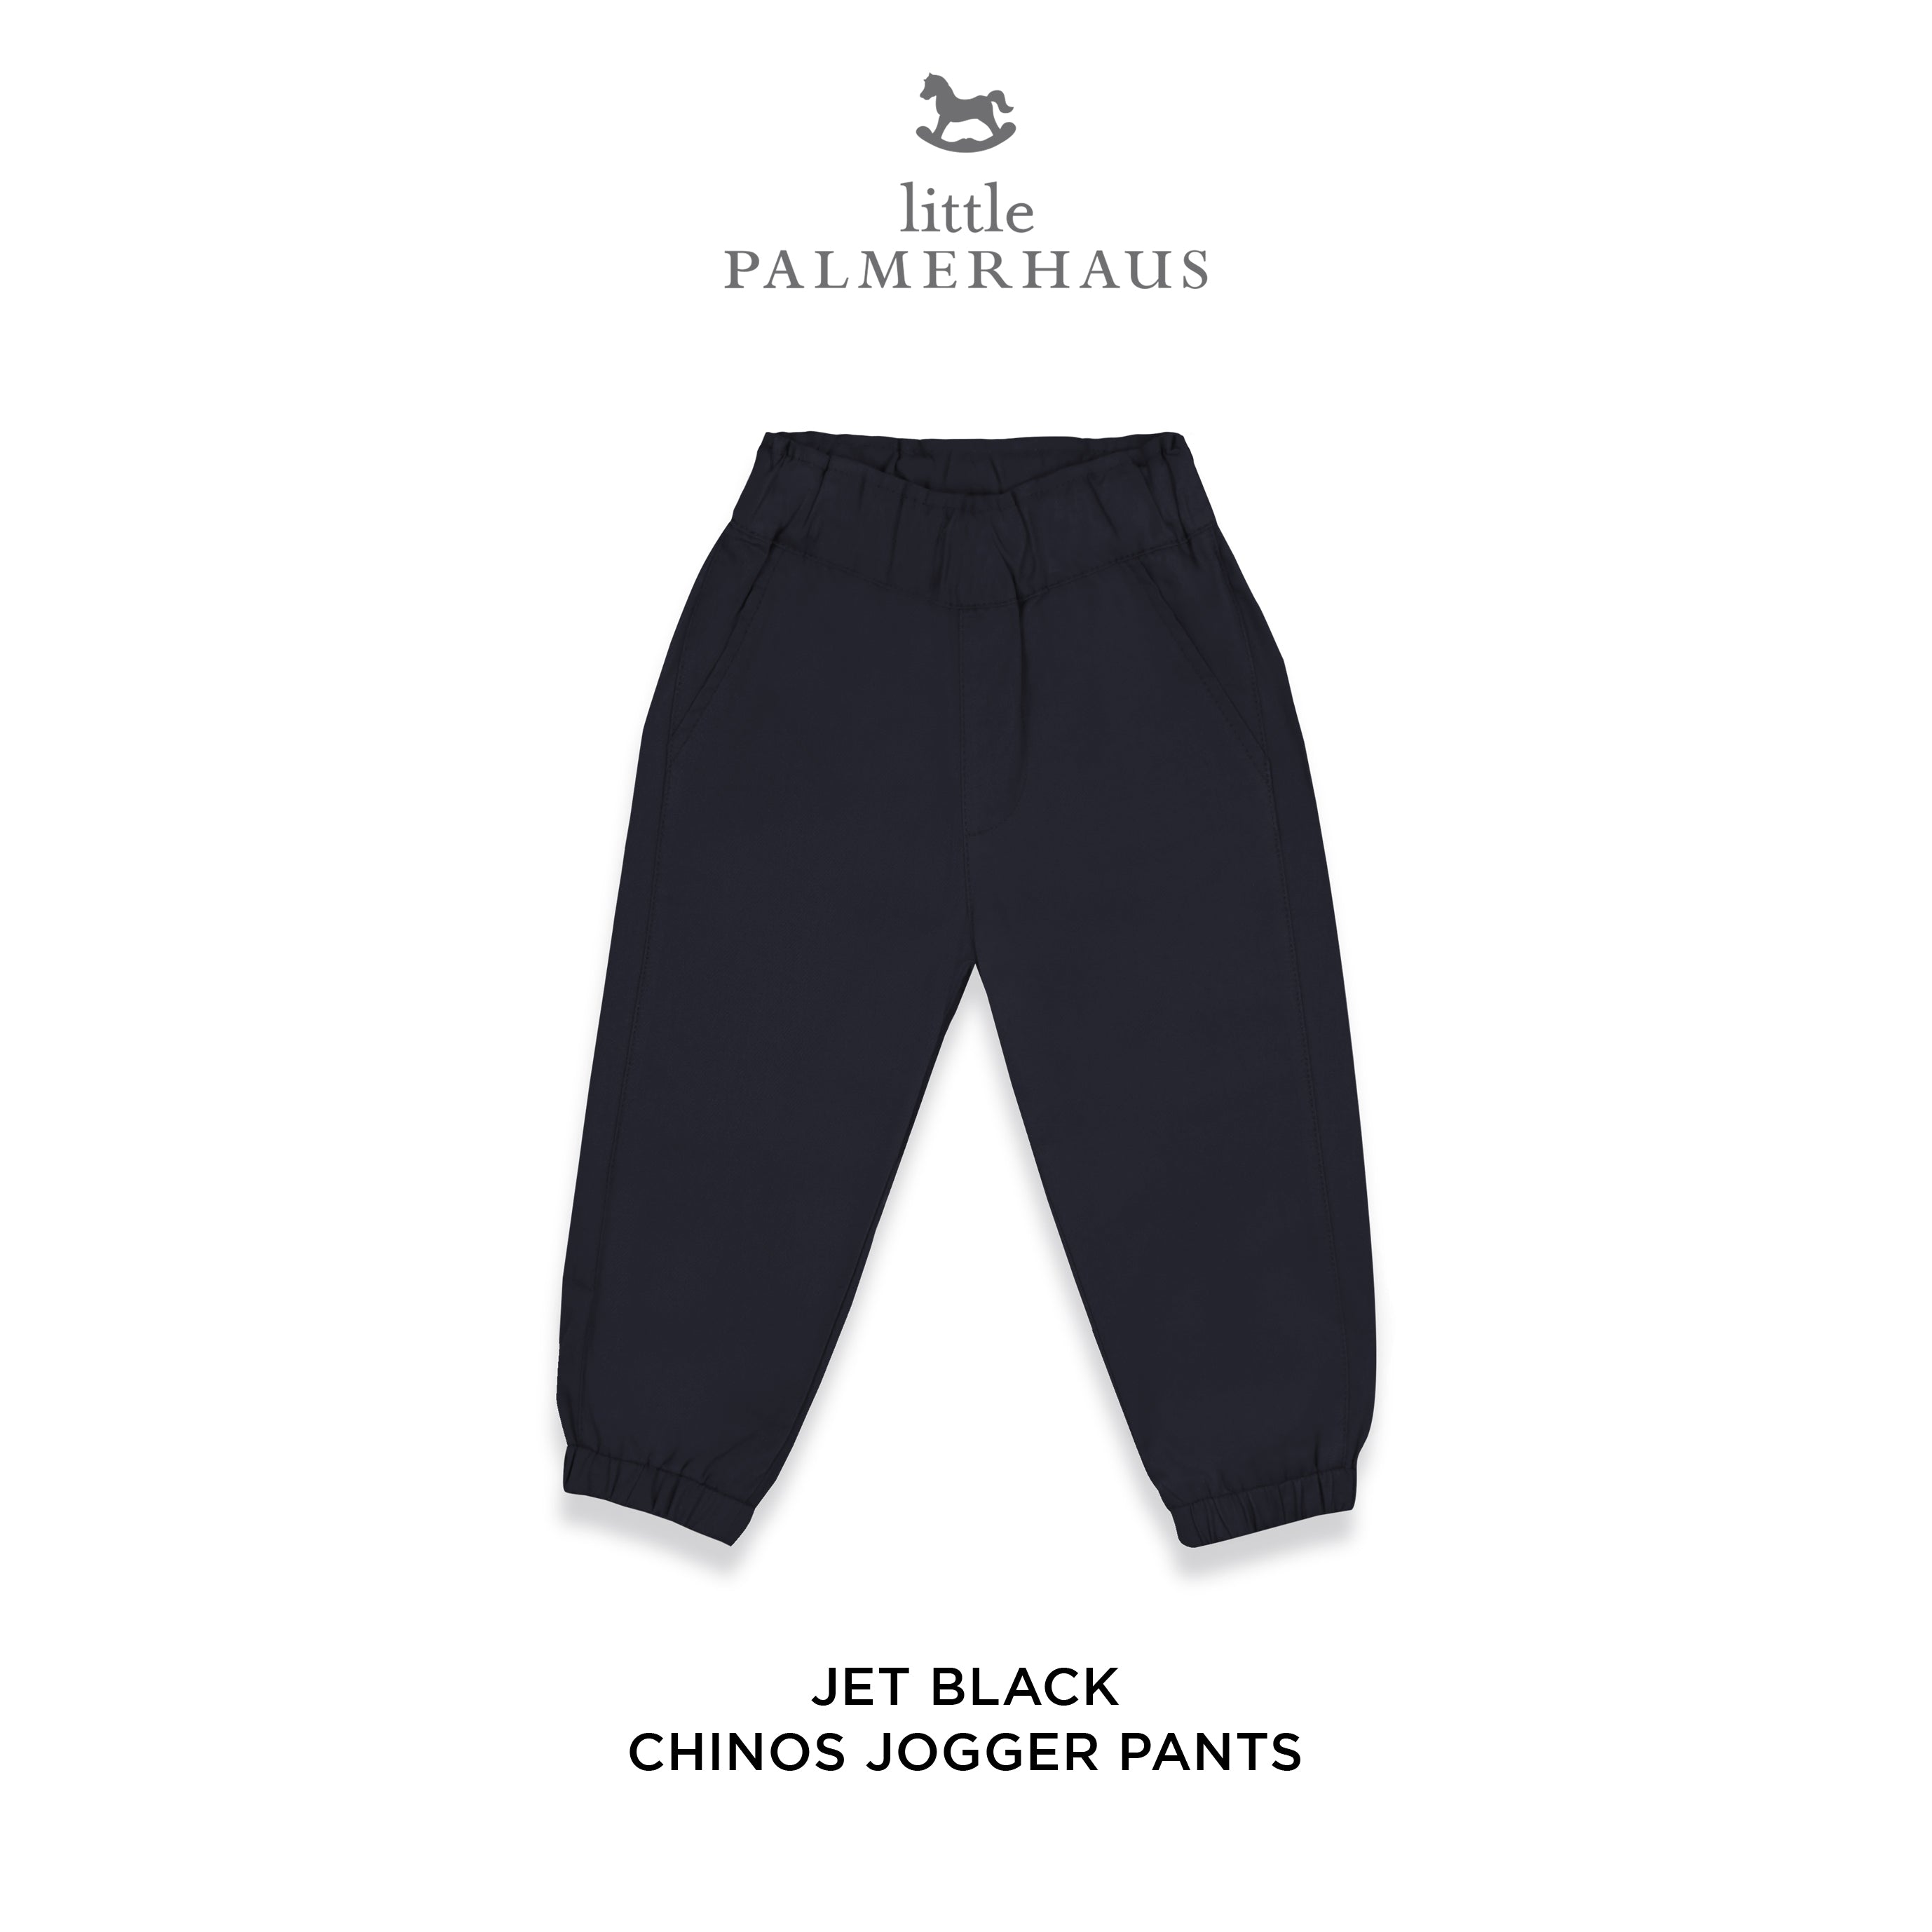 Chinos Jogger Pants 6.0